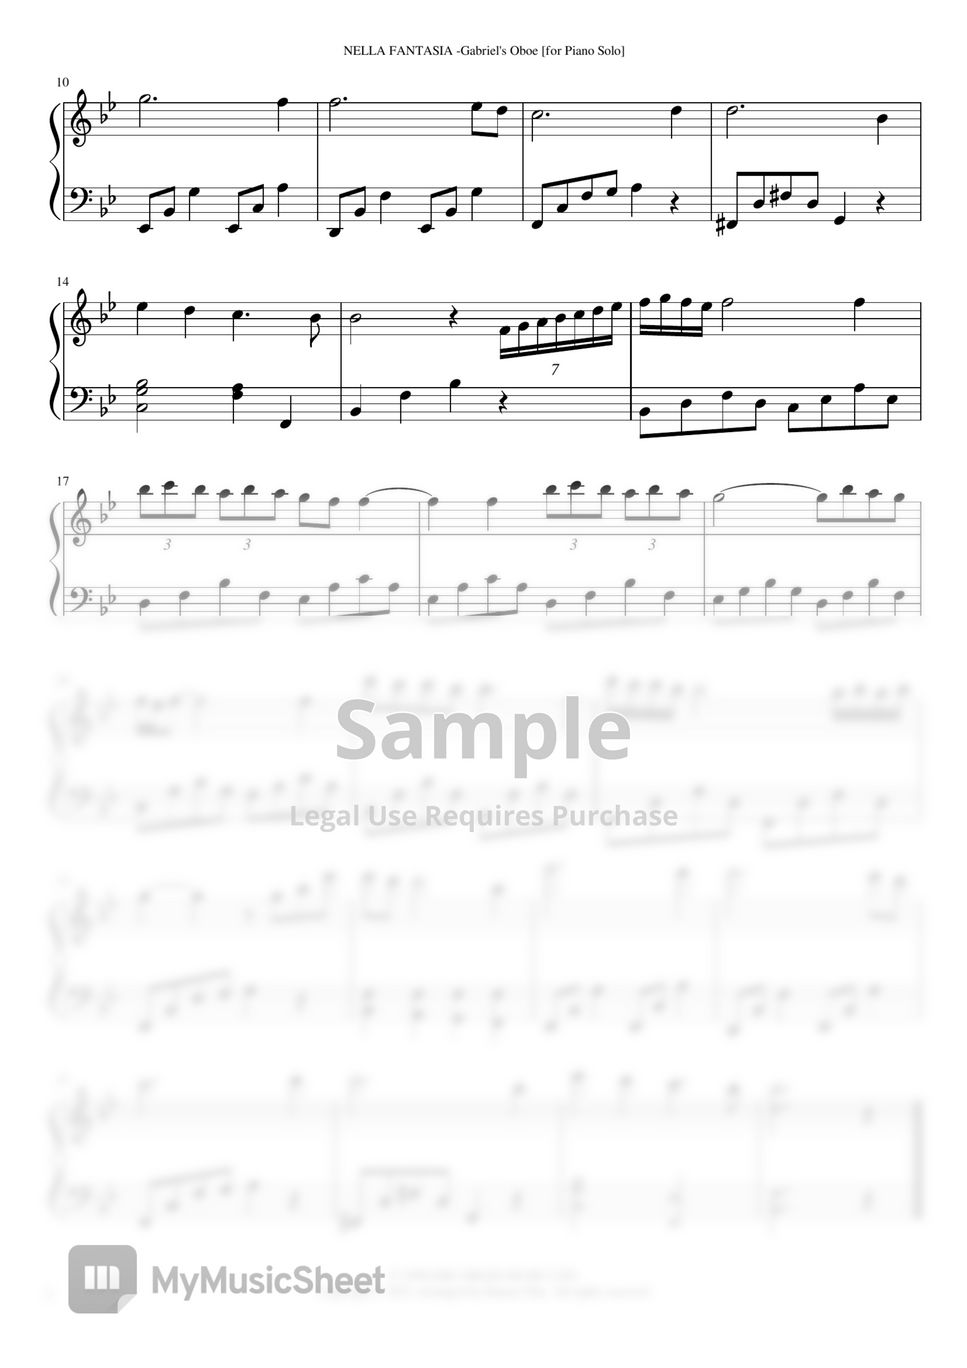 Ennio Morricone - Nella Fantasia "Gabriel's Oboe" 넬라판타지아 (piano solo)